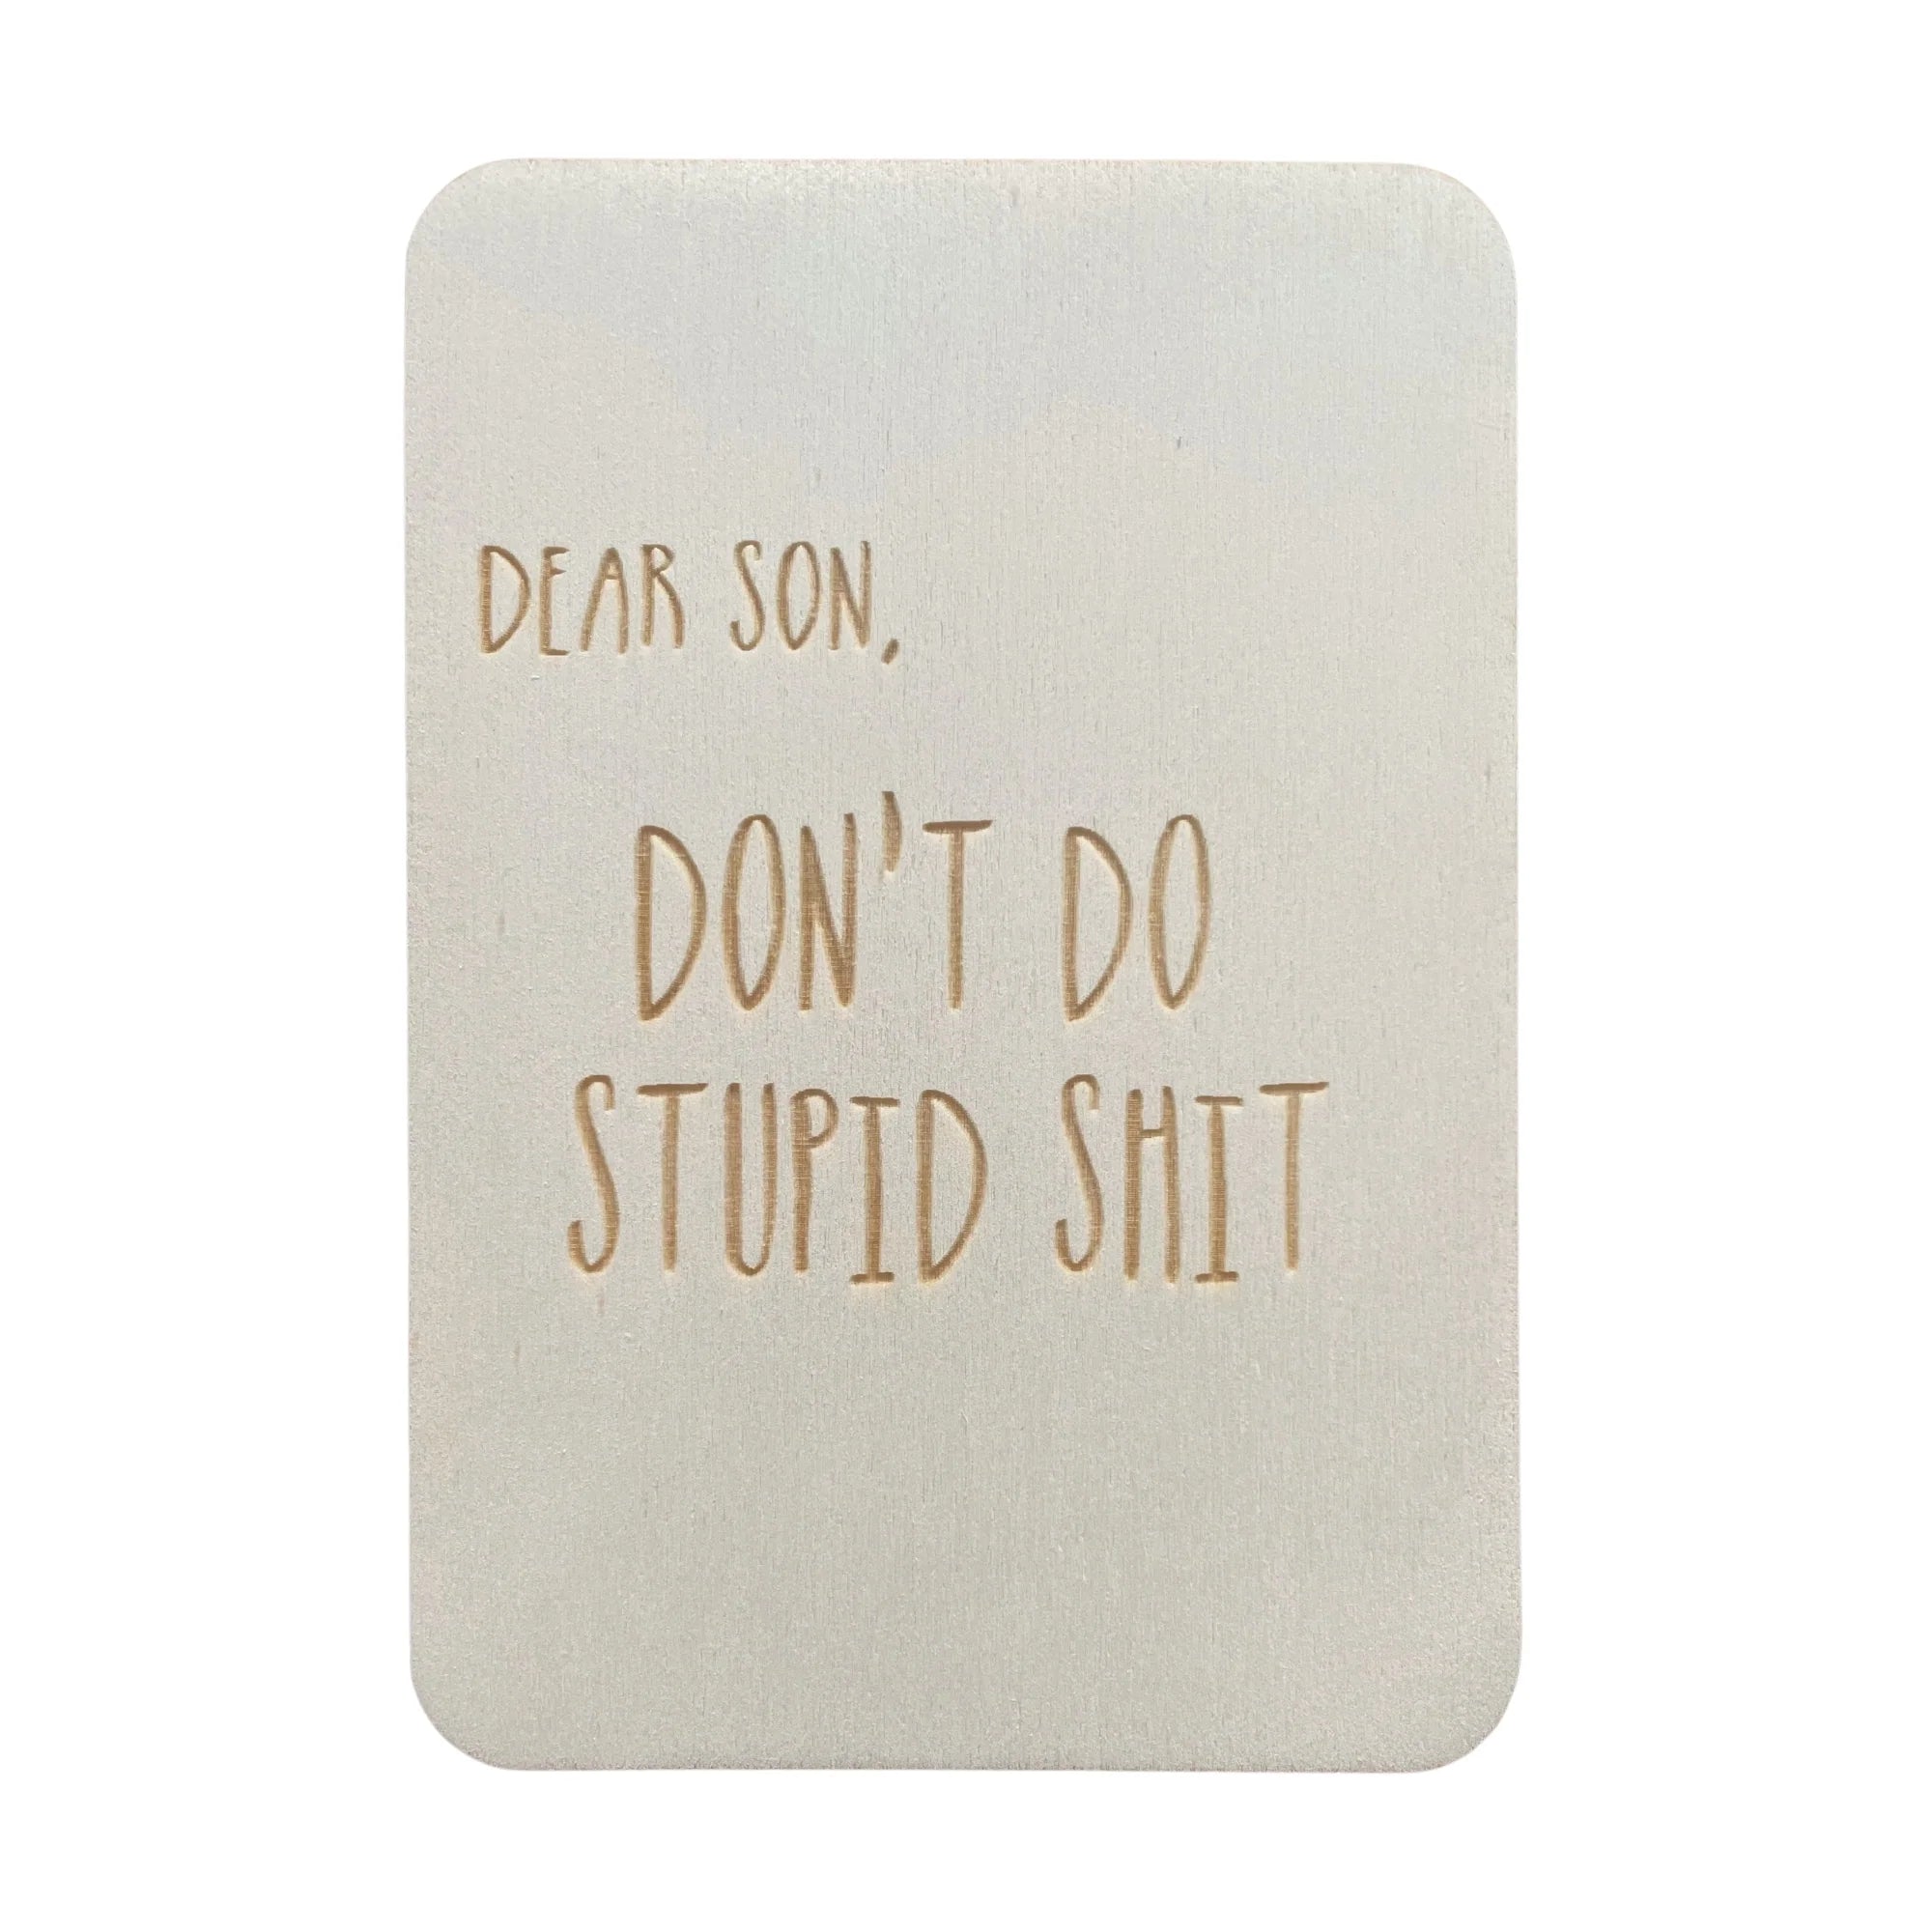 Dear Son don't do stupid shit